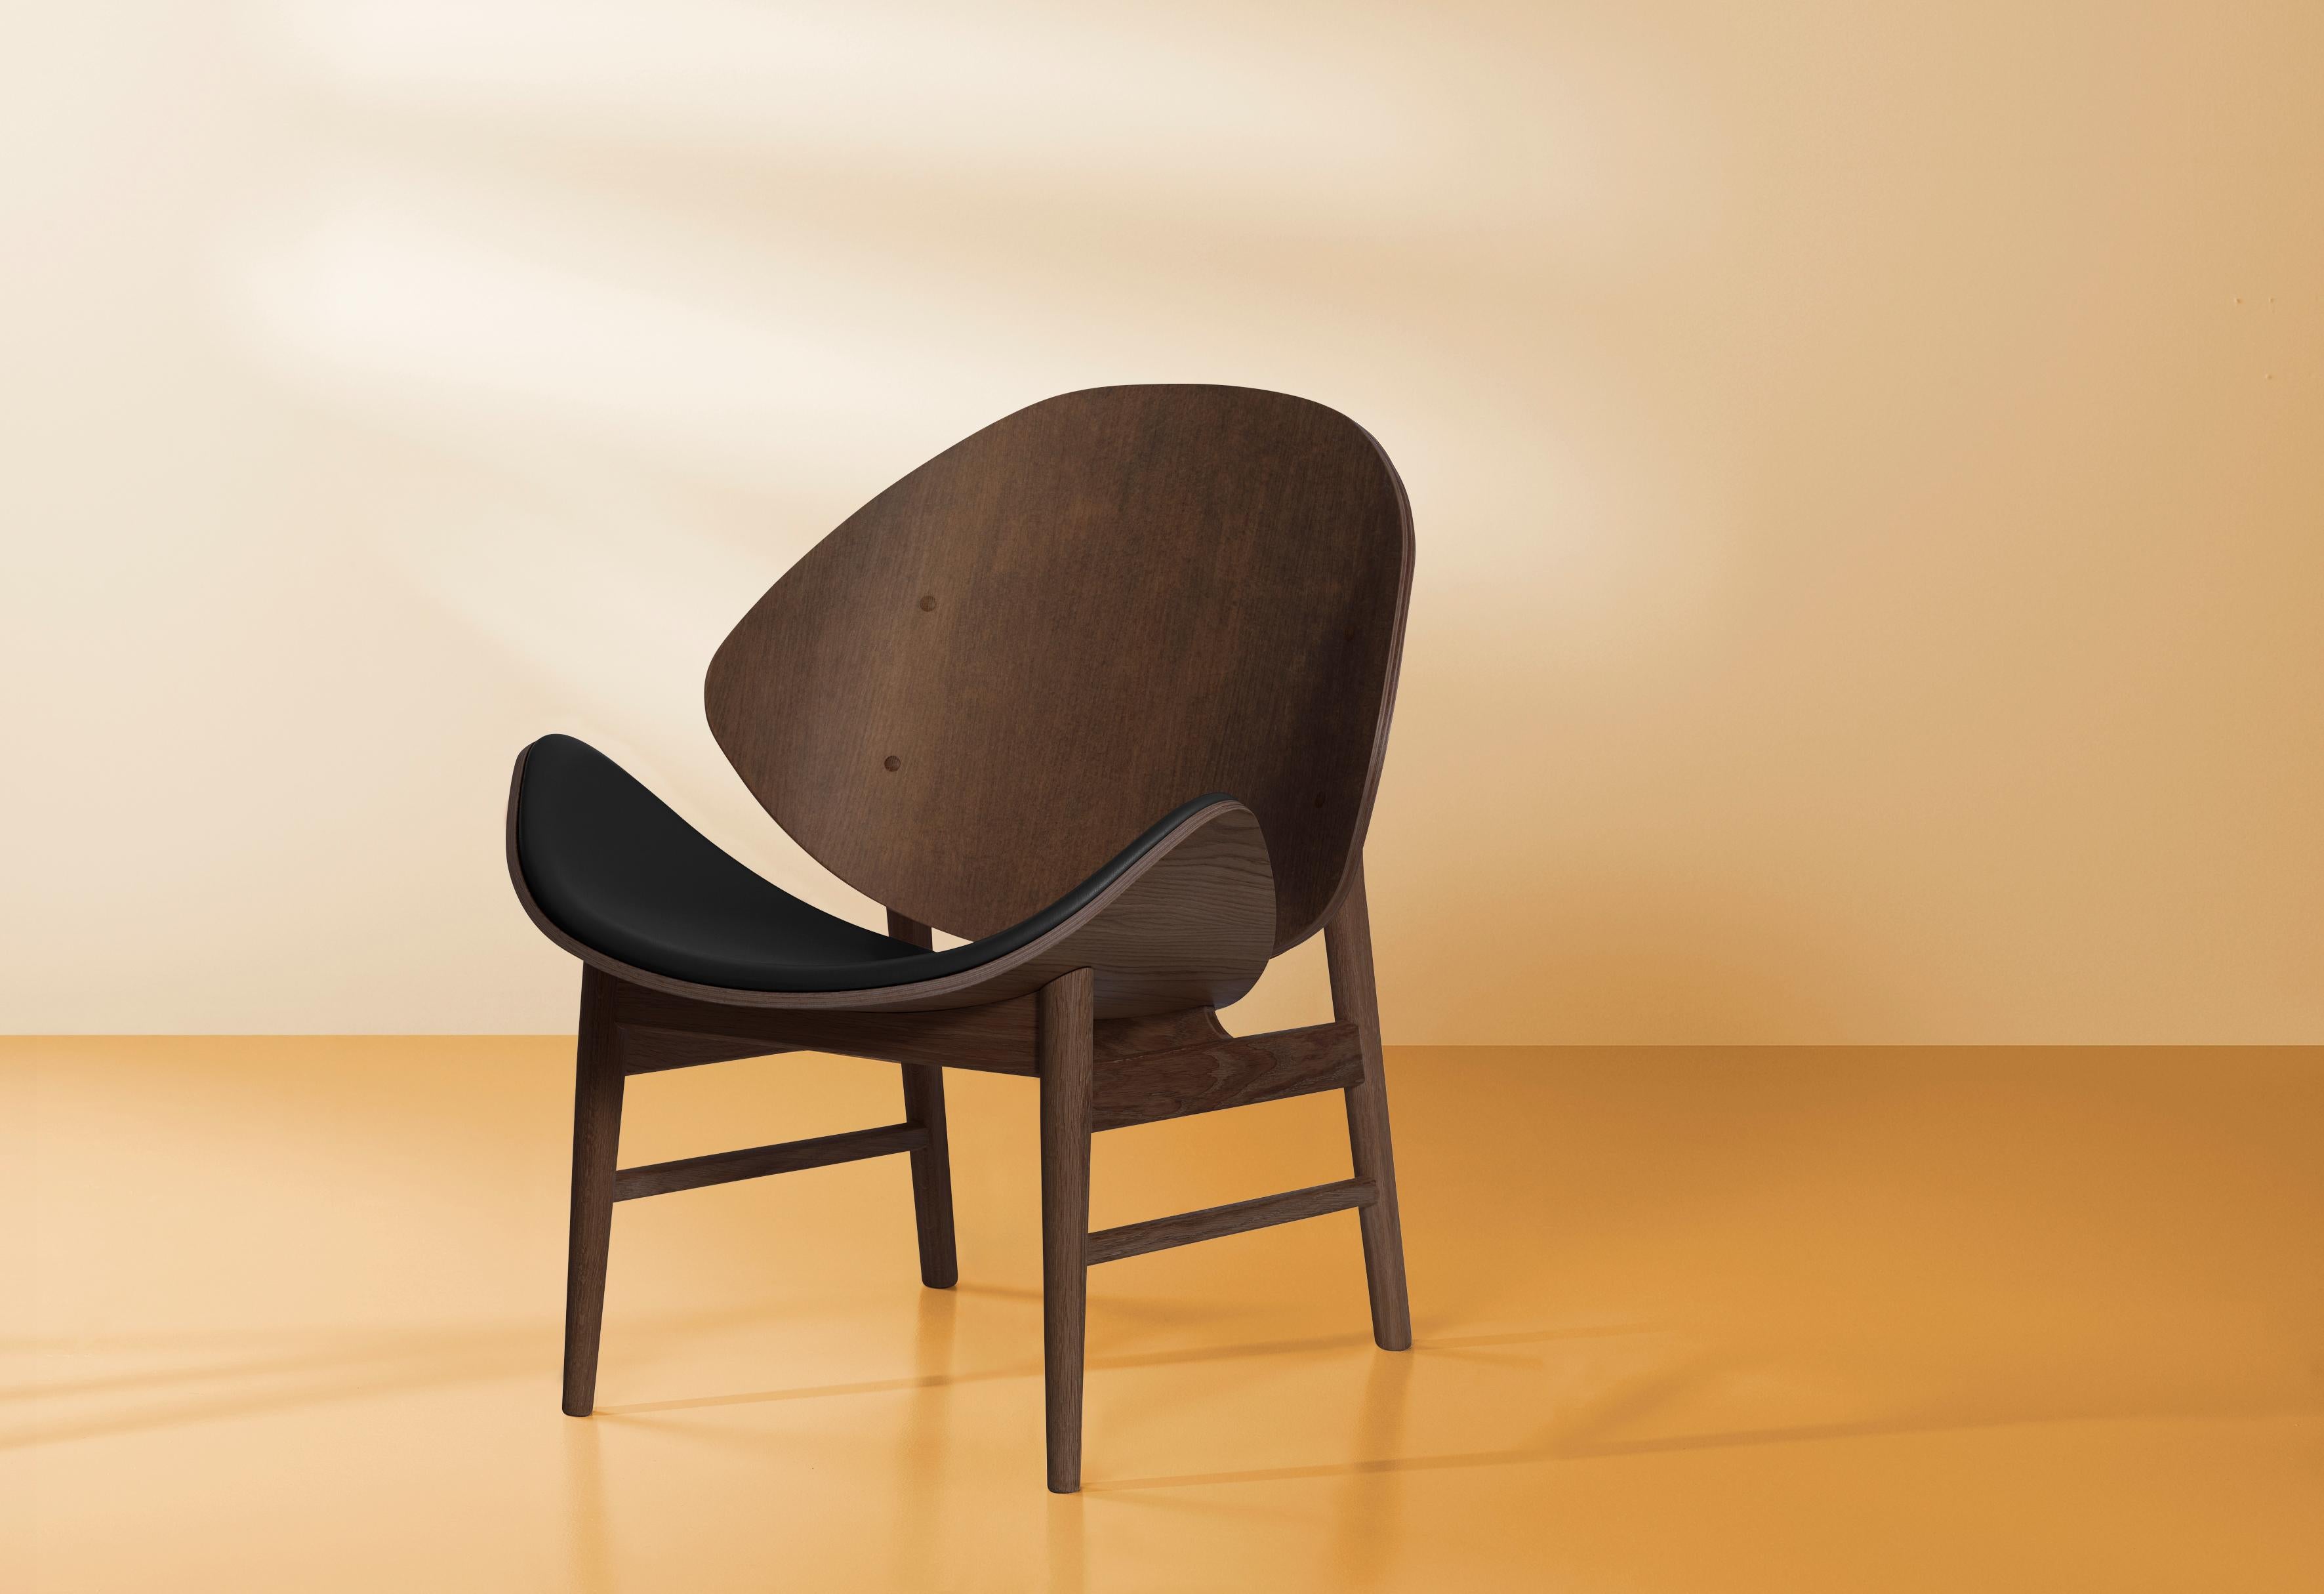 Dieser leichte, elegante Stuhl, der Orange, wurde in den 1950er Jahren von dem bekannten dänischen Architekten Hans Olsen entworfen. Dank seines klassischen Ausdrucks passt der orangefarbene Stuhl sowohl zu einem modernen als auch zu einem zeitlosen